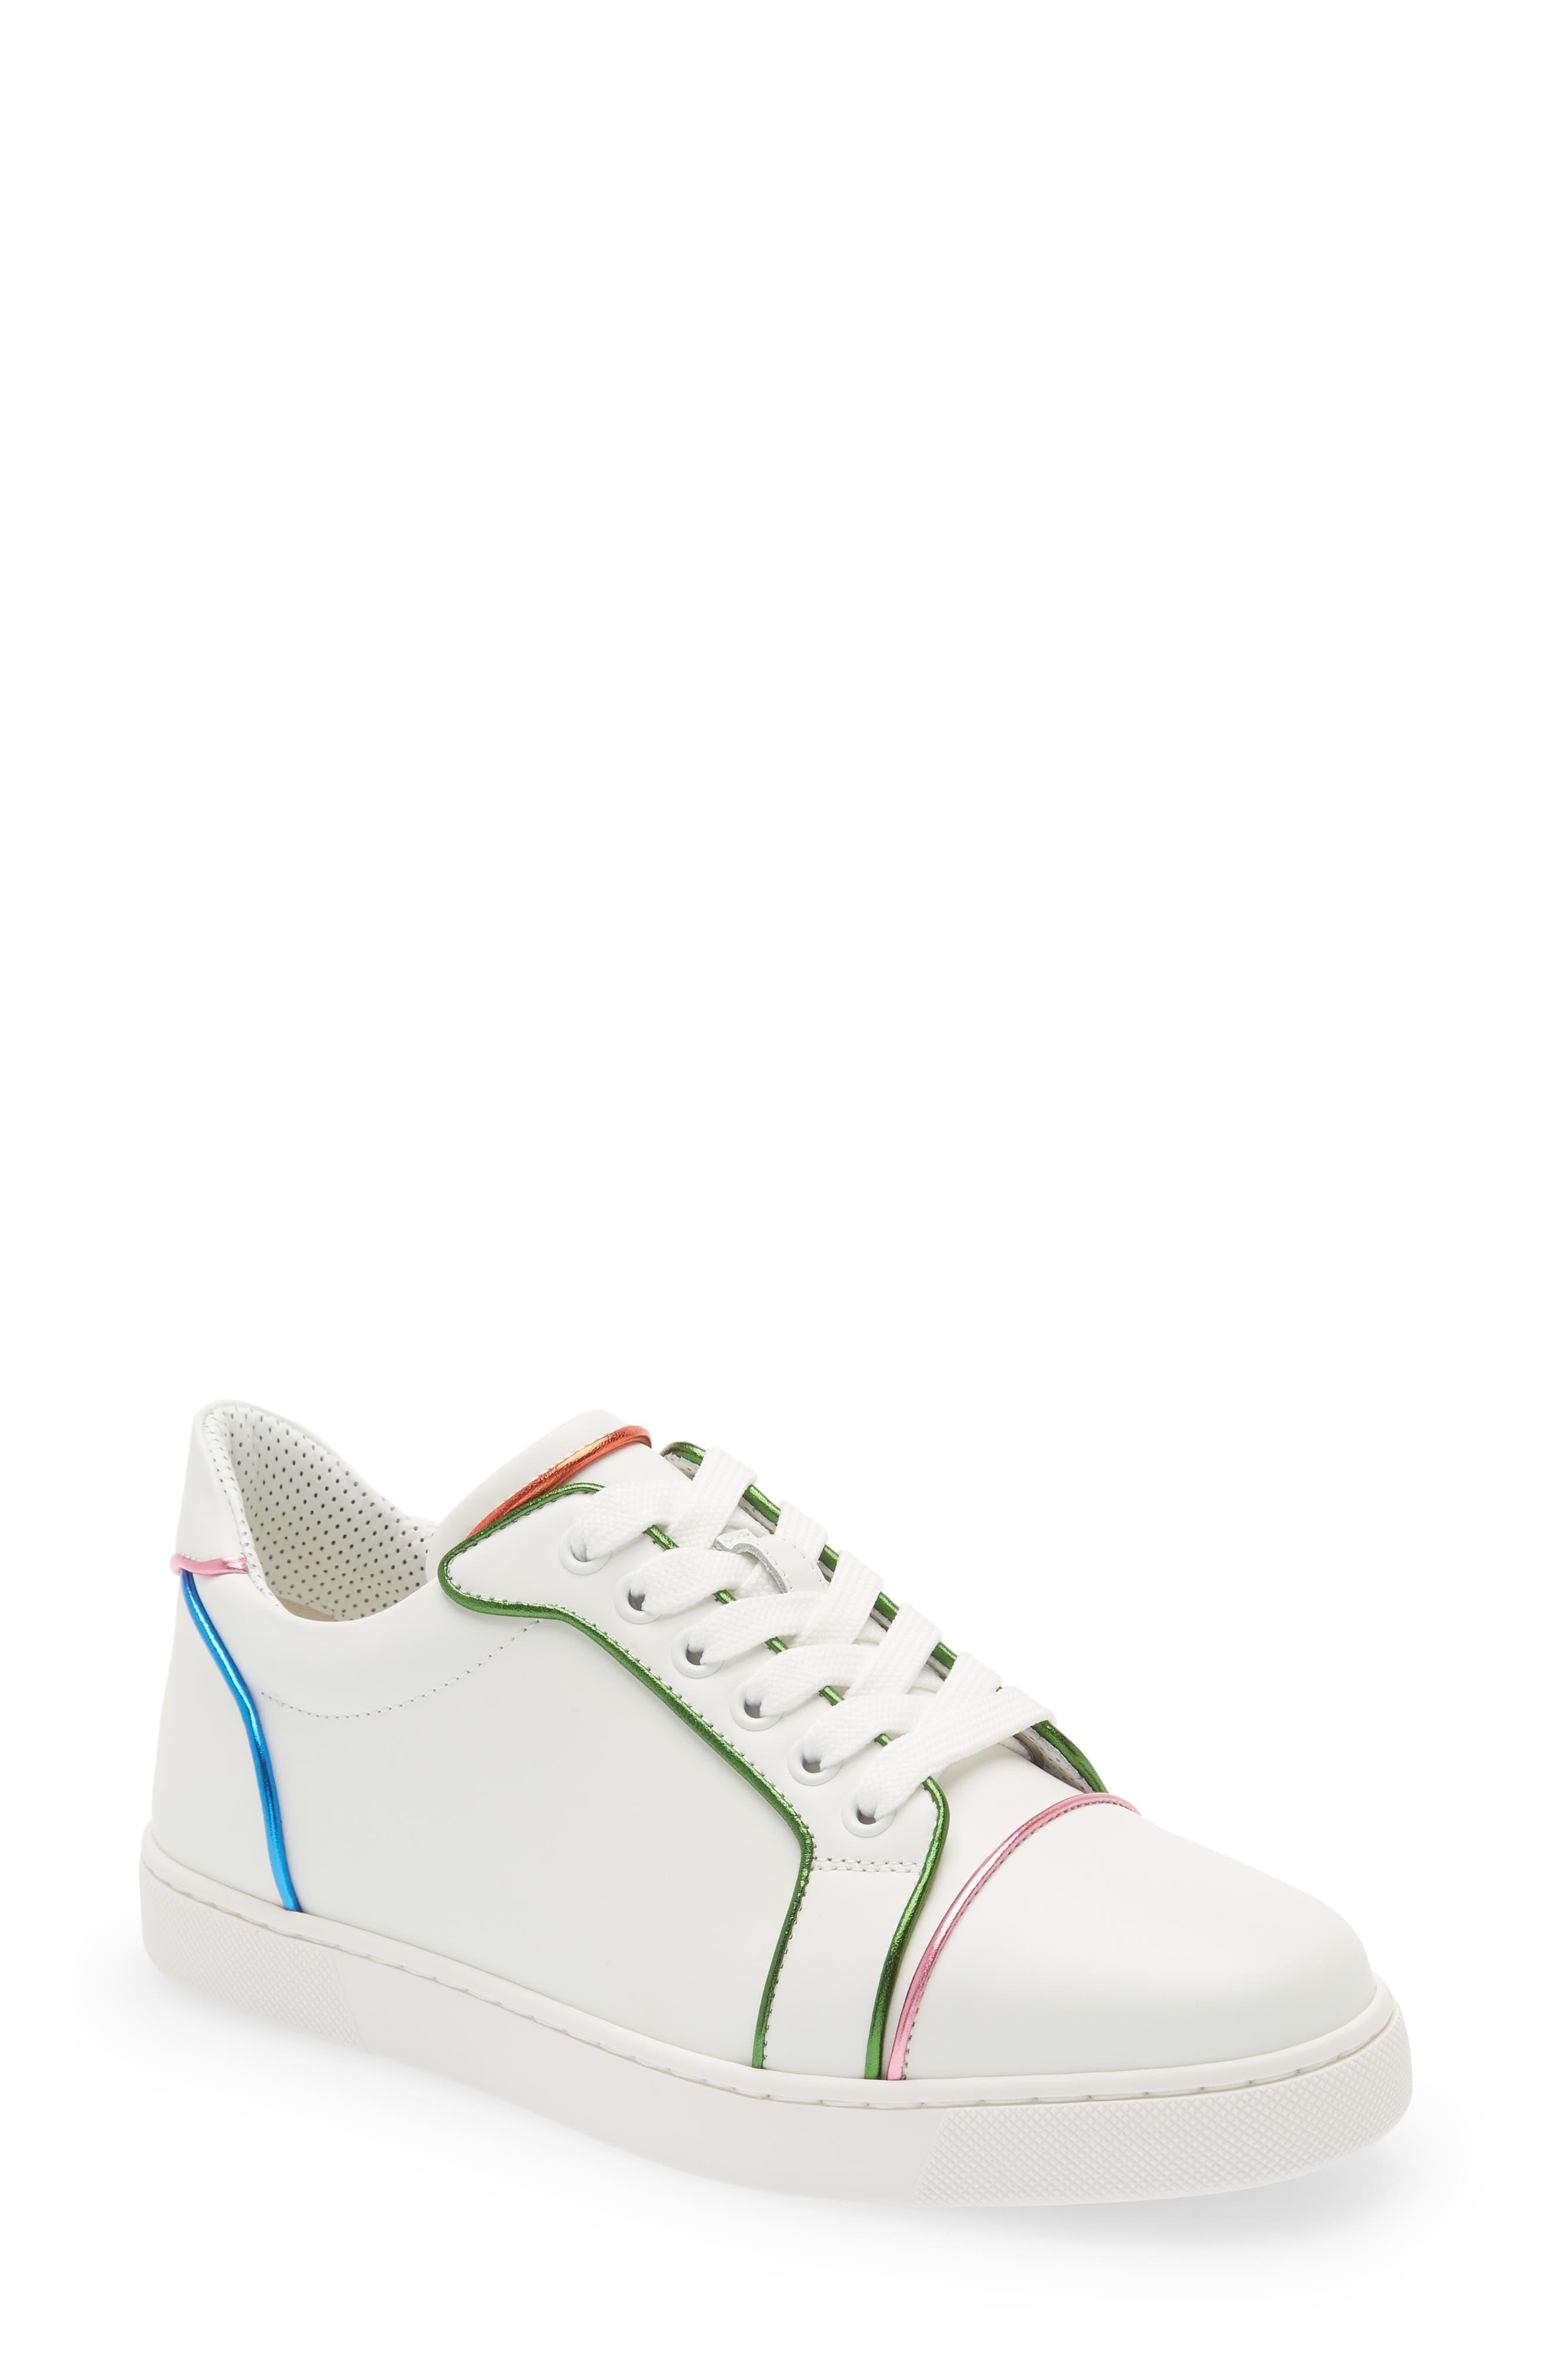 Christian Louboutin Fun Viera Sneaker Multi/ Bianco